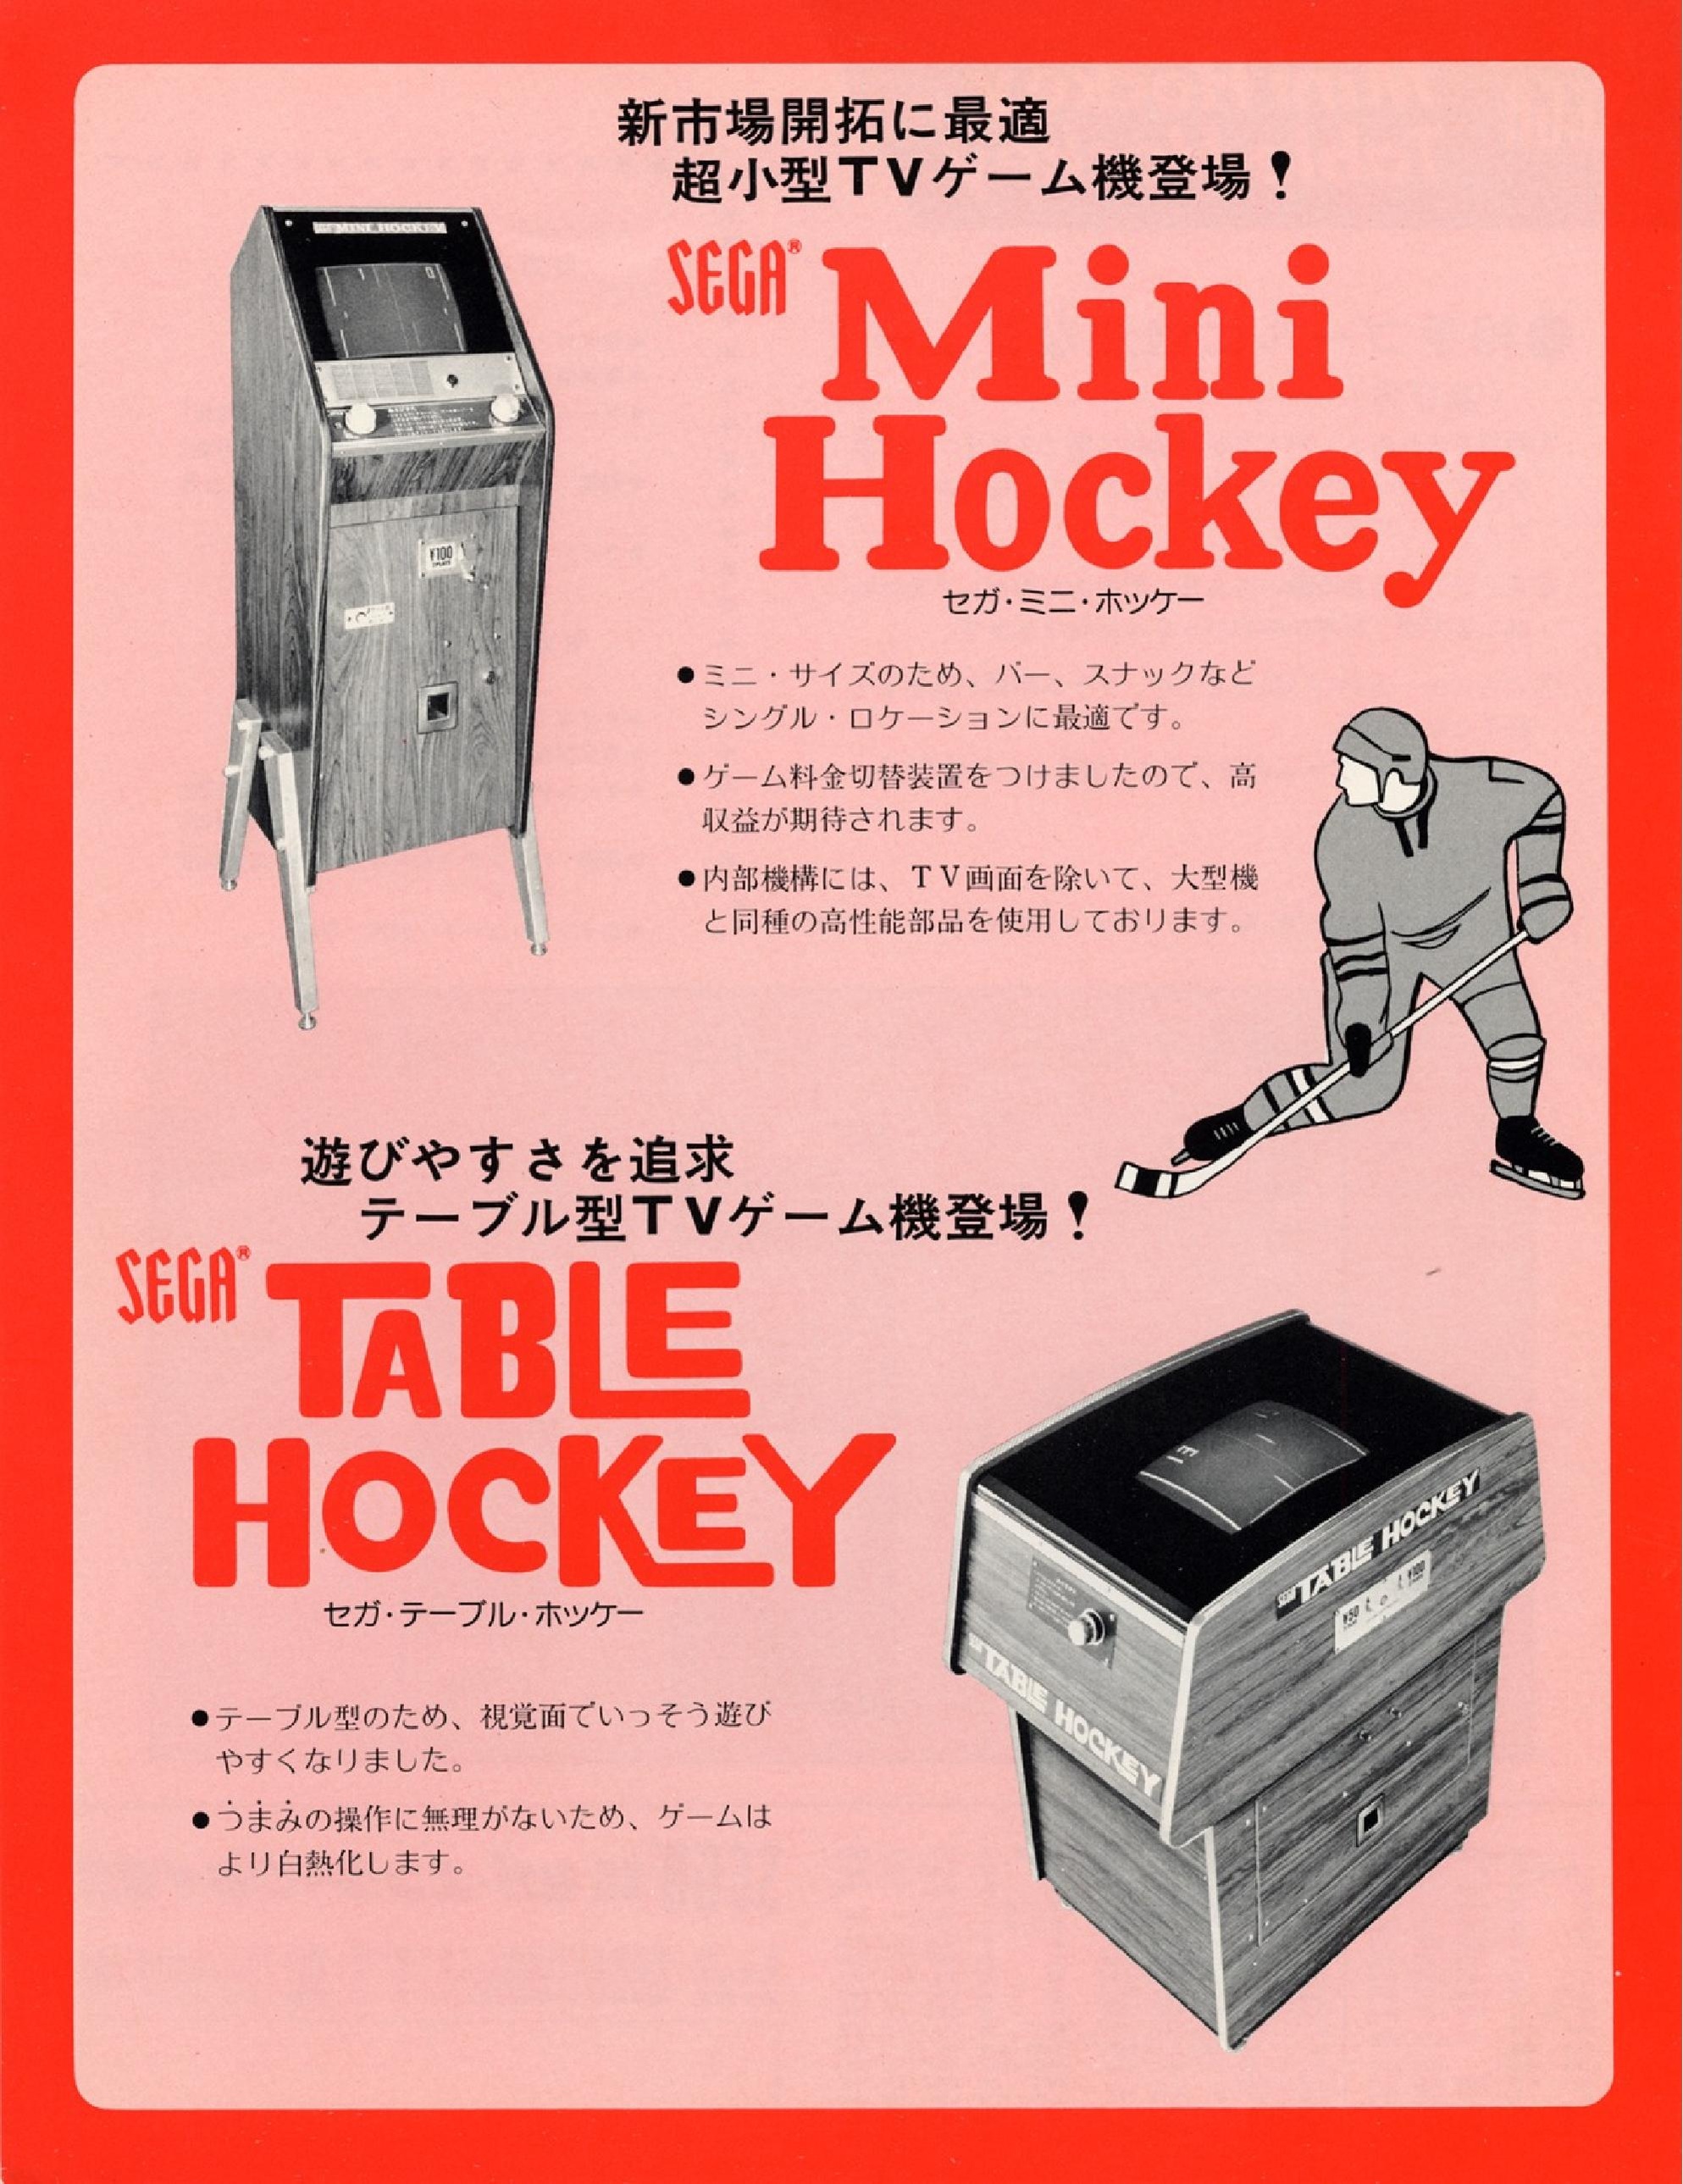 MHockeyTHockey DiscreteLogic Flyer.pdf